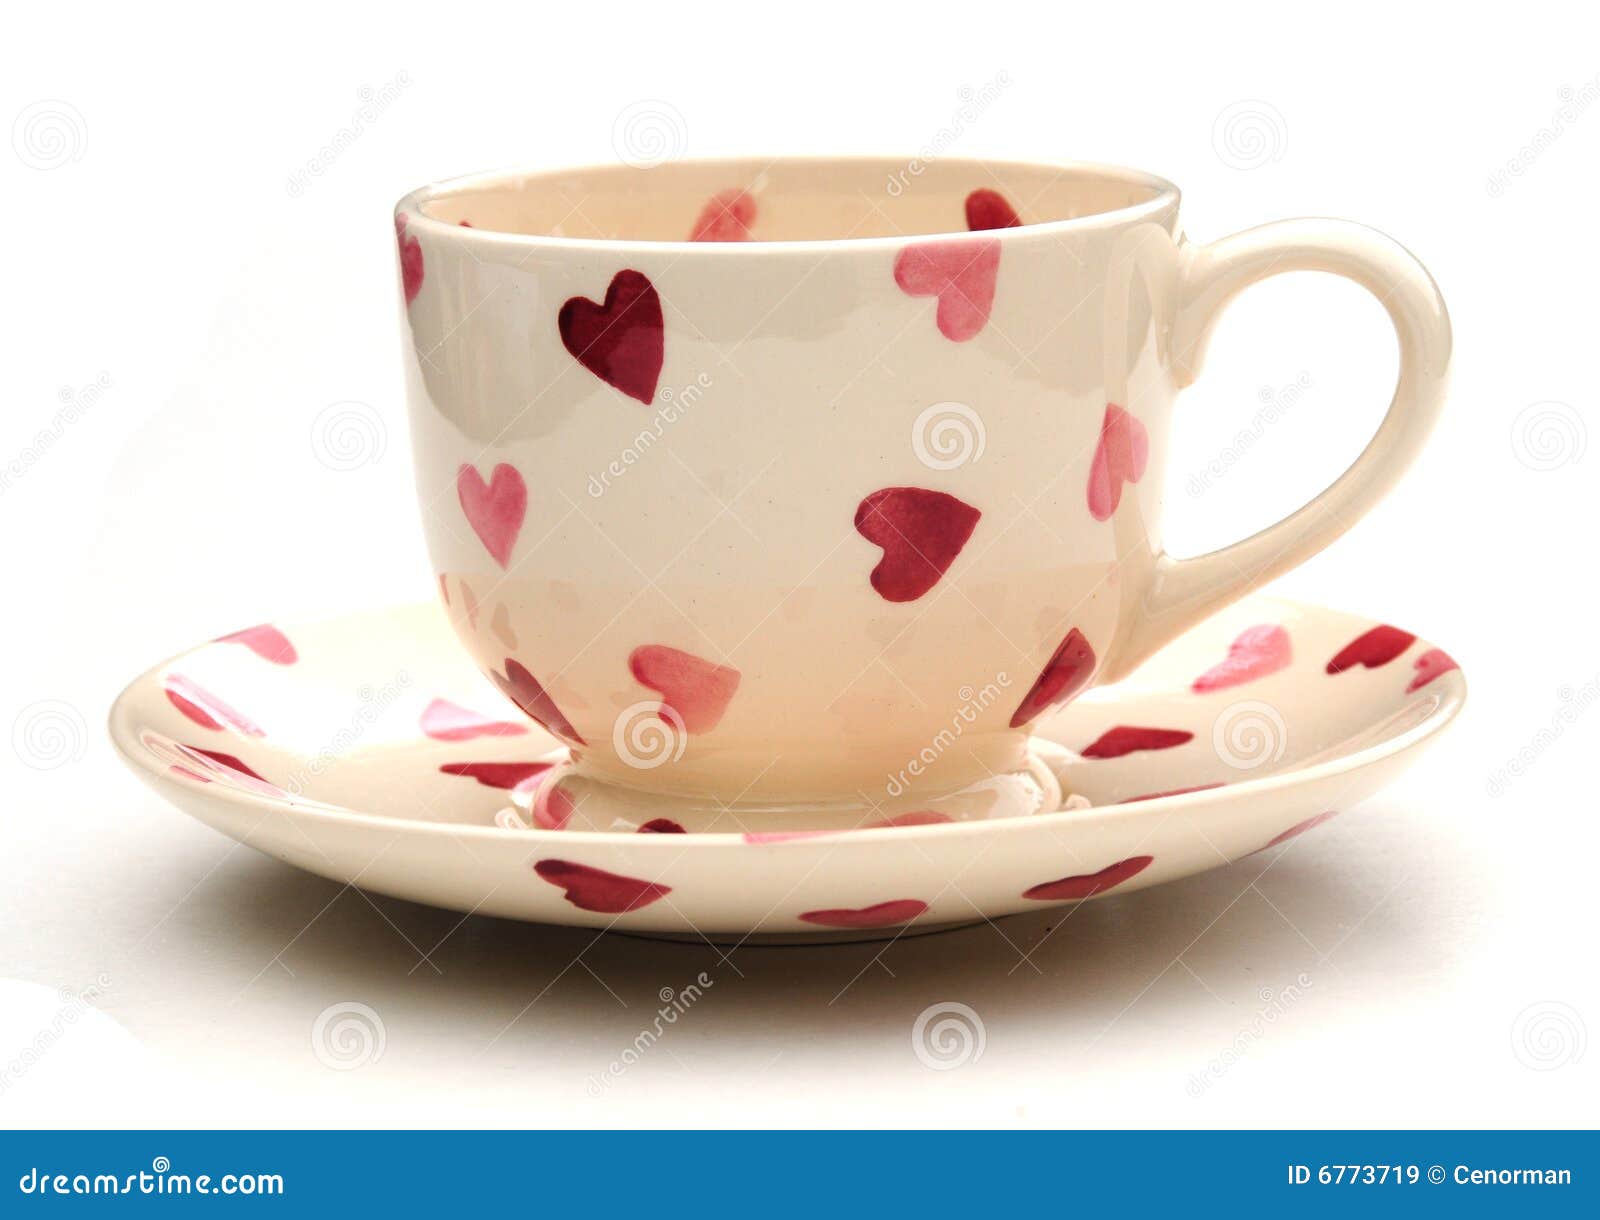 pretty-teacup-saucer-6773719.jpg